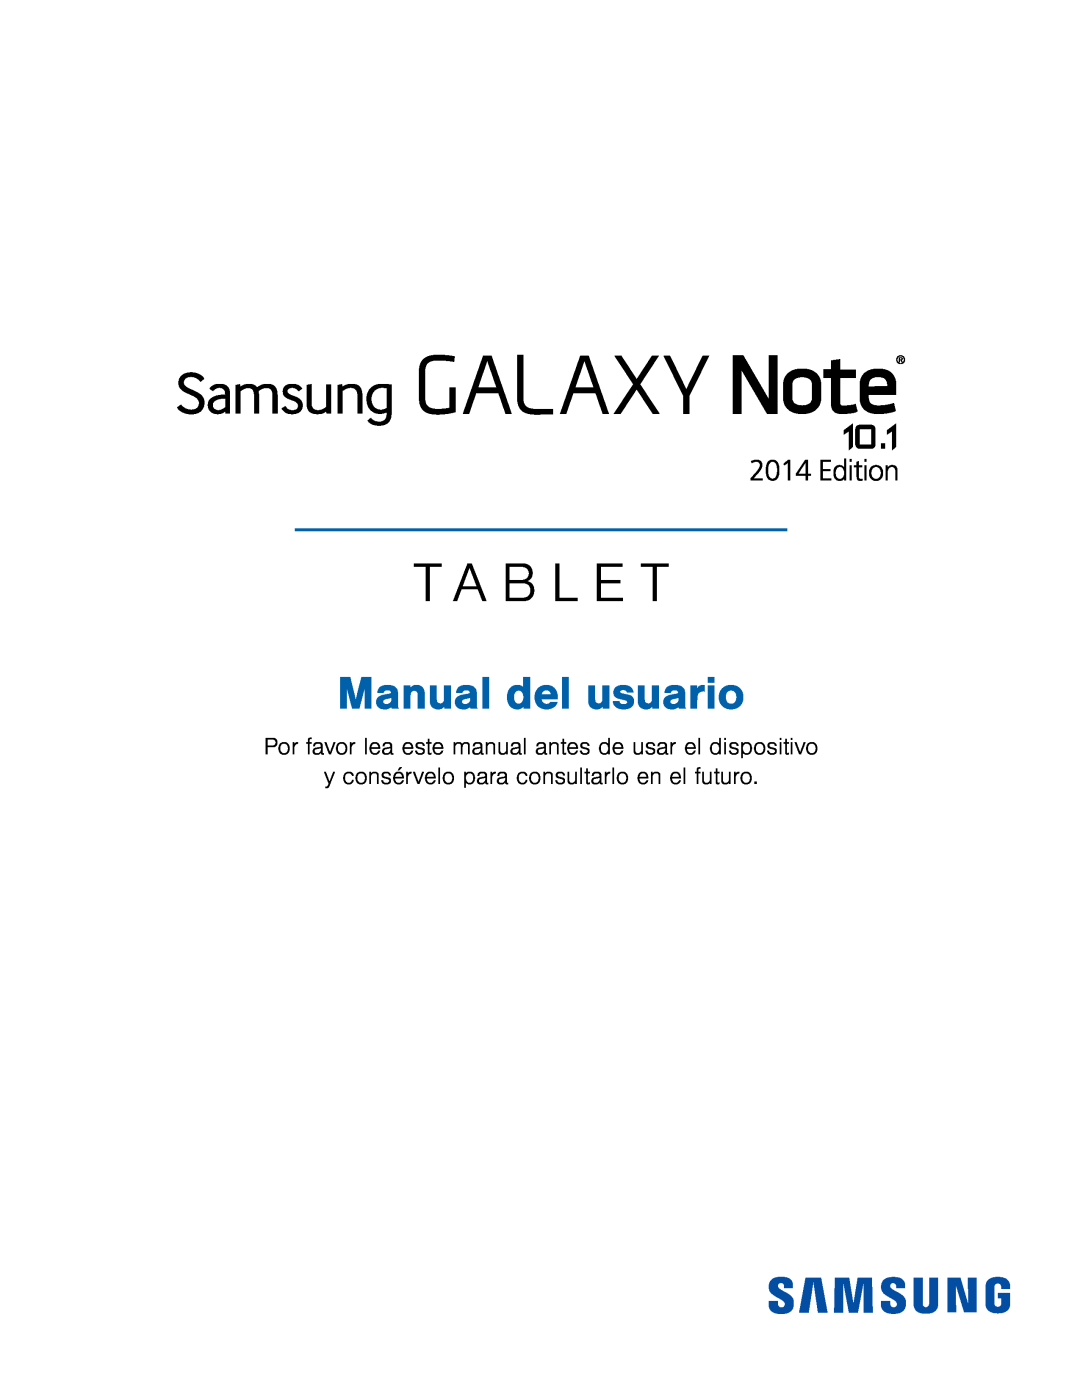 y consérvelo para consultarlo en el futuro Galaxy Note 10.1 2014 Edition T-Mobile